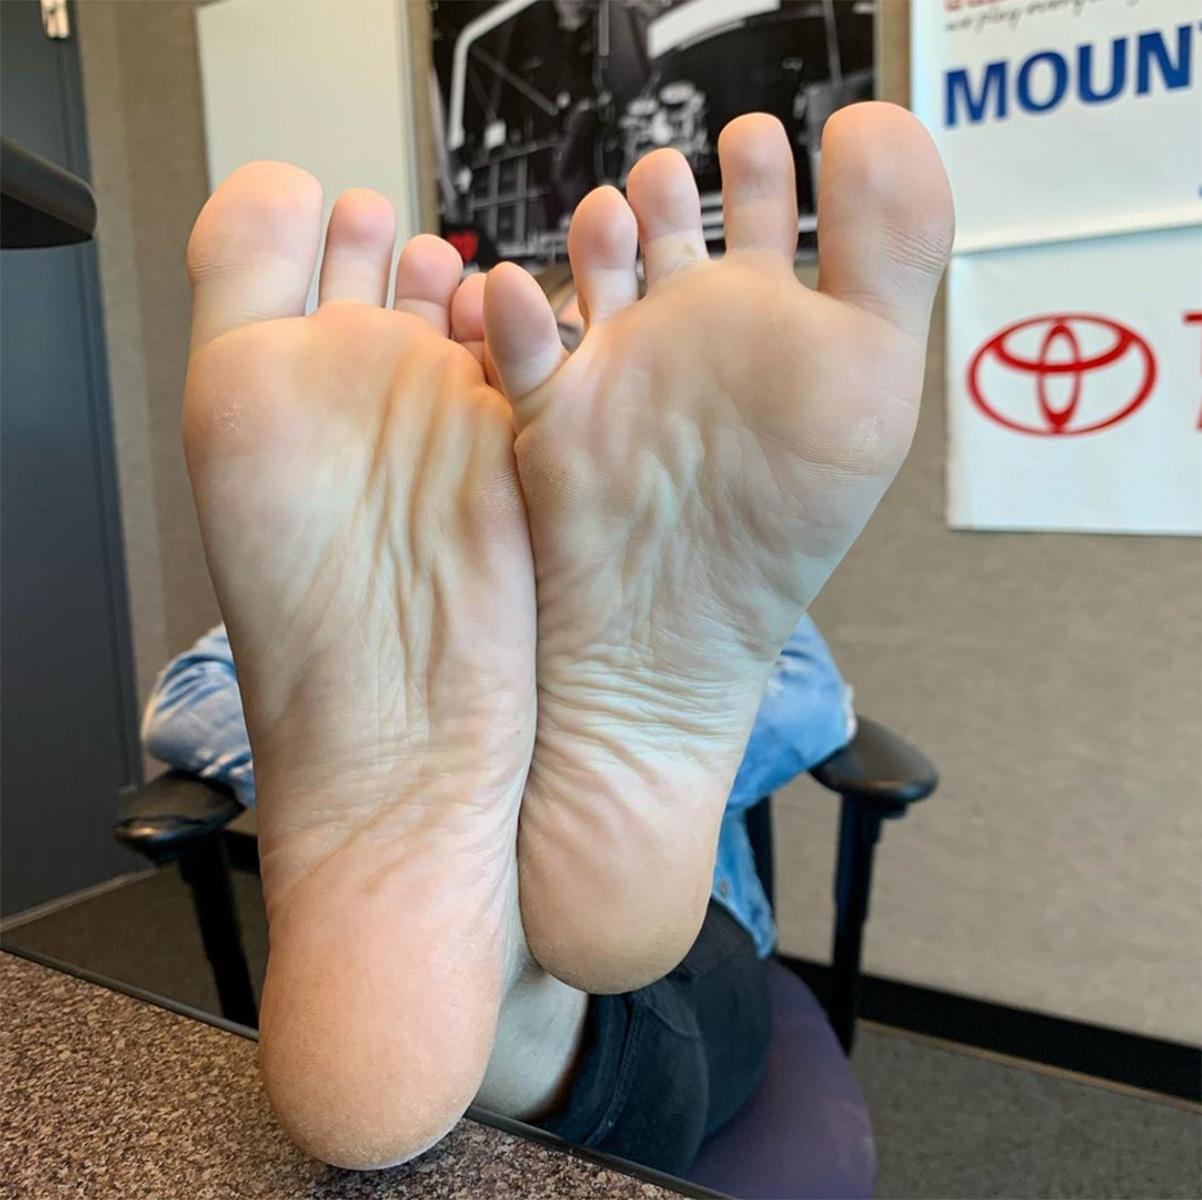 Nyon feet fetish